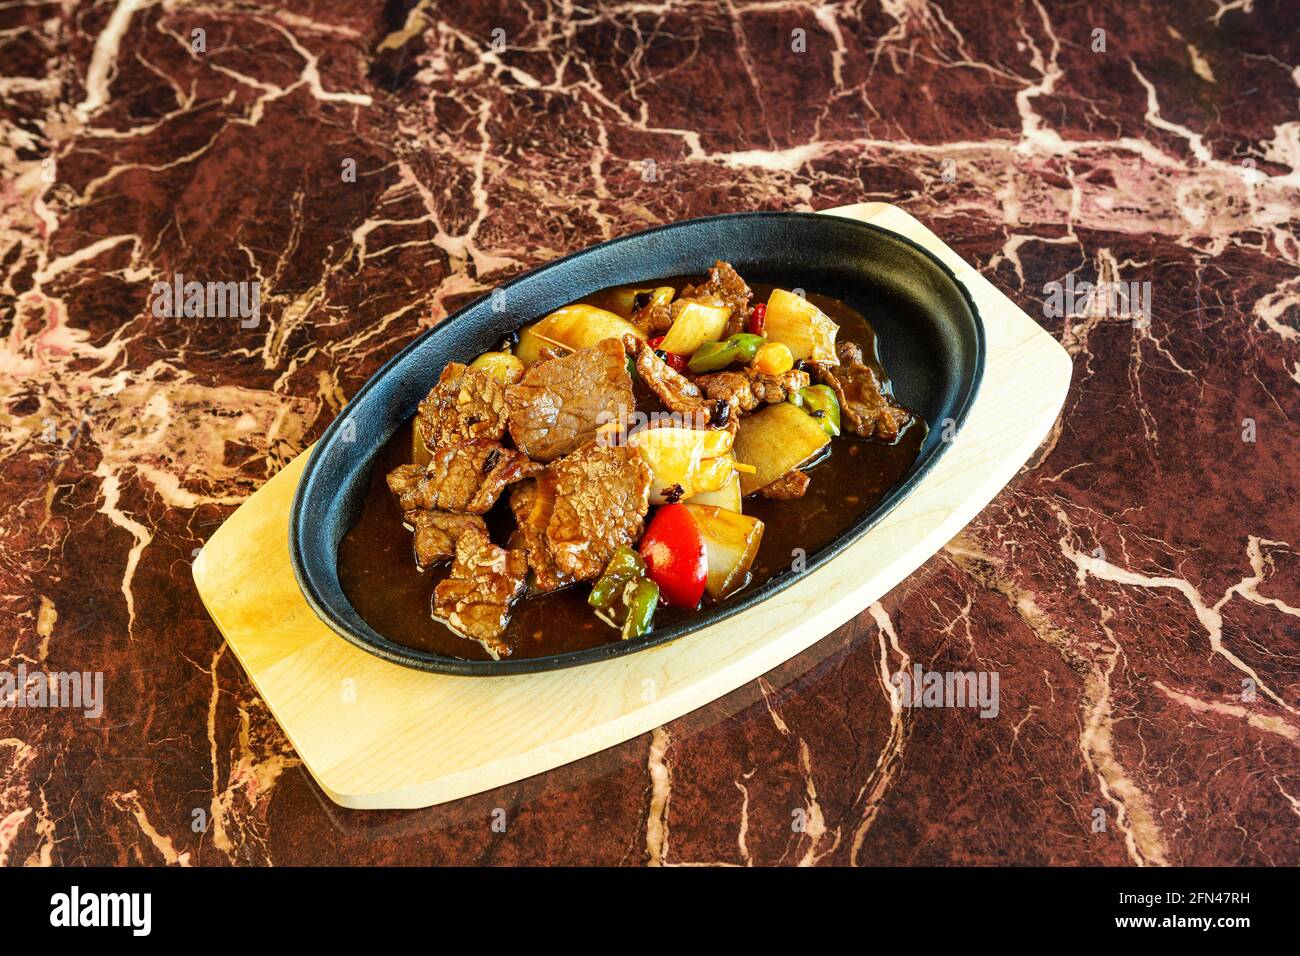 Asiatisches Rindfleischgericht mit herzhafter Sauce und etwas Gemüse, das auf einem heißen Teller unter einer marmorierten Oberfläche serviert wird. Stockfoto